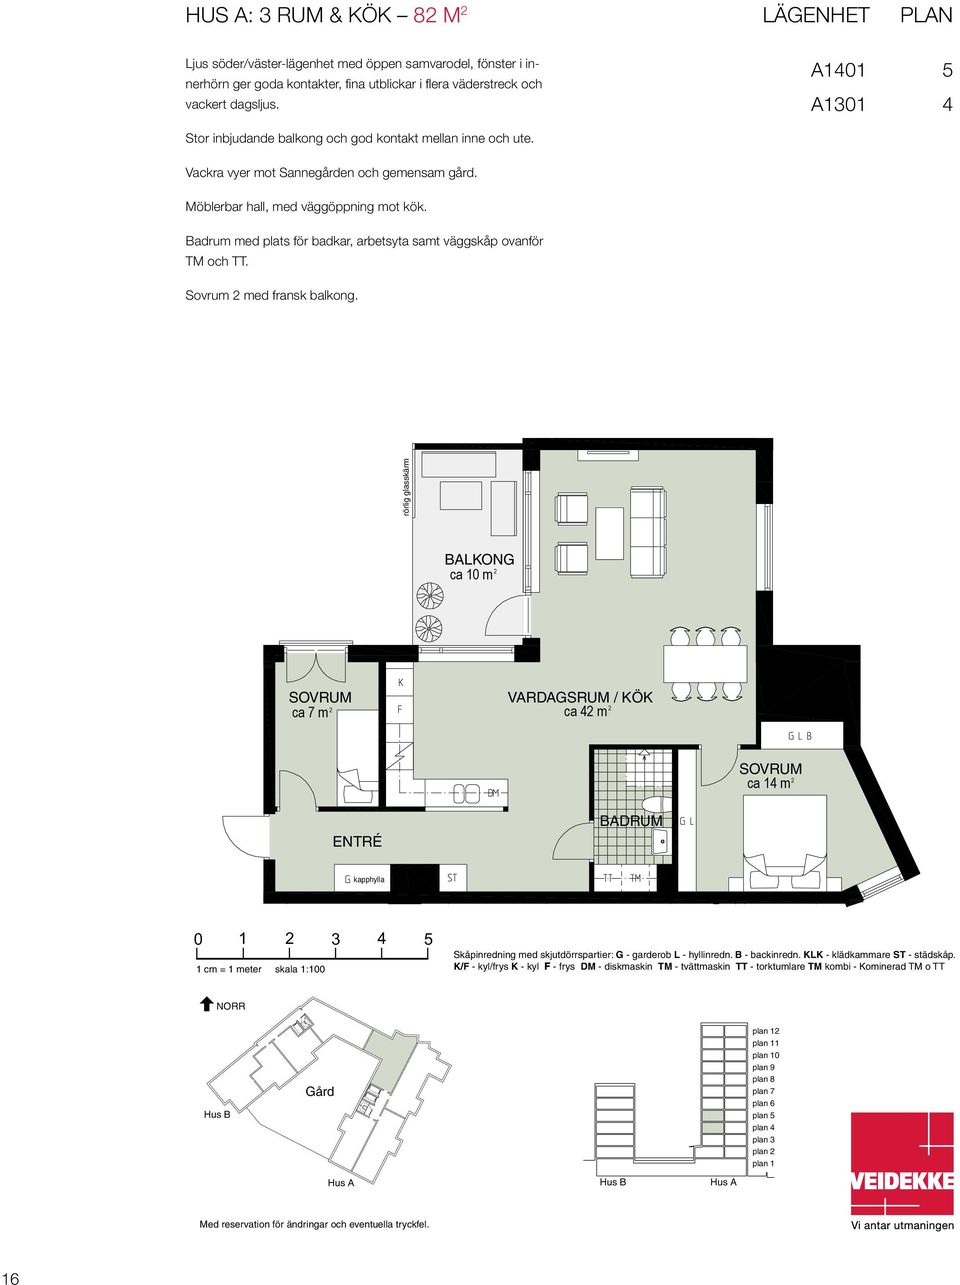 Lägenhet PLAN Lägenhet Plan Hus A1401 5 A1401 5 A A1301 4 A A1301 4 Möblerbar hall, med väggöppning mot kök. Badrum med plats för badkar, arbetsyta samt väggskåp ovanför TM och TT.